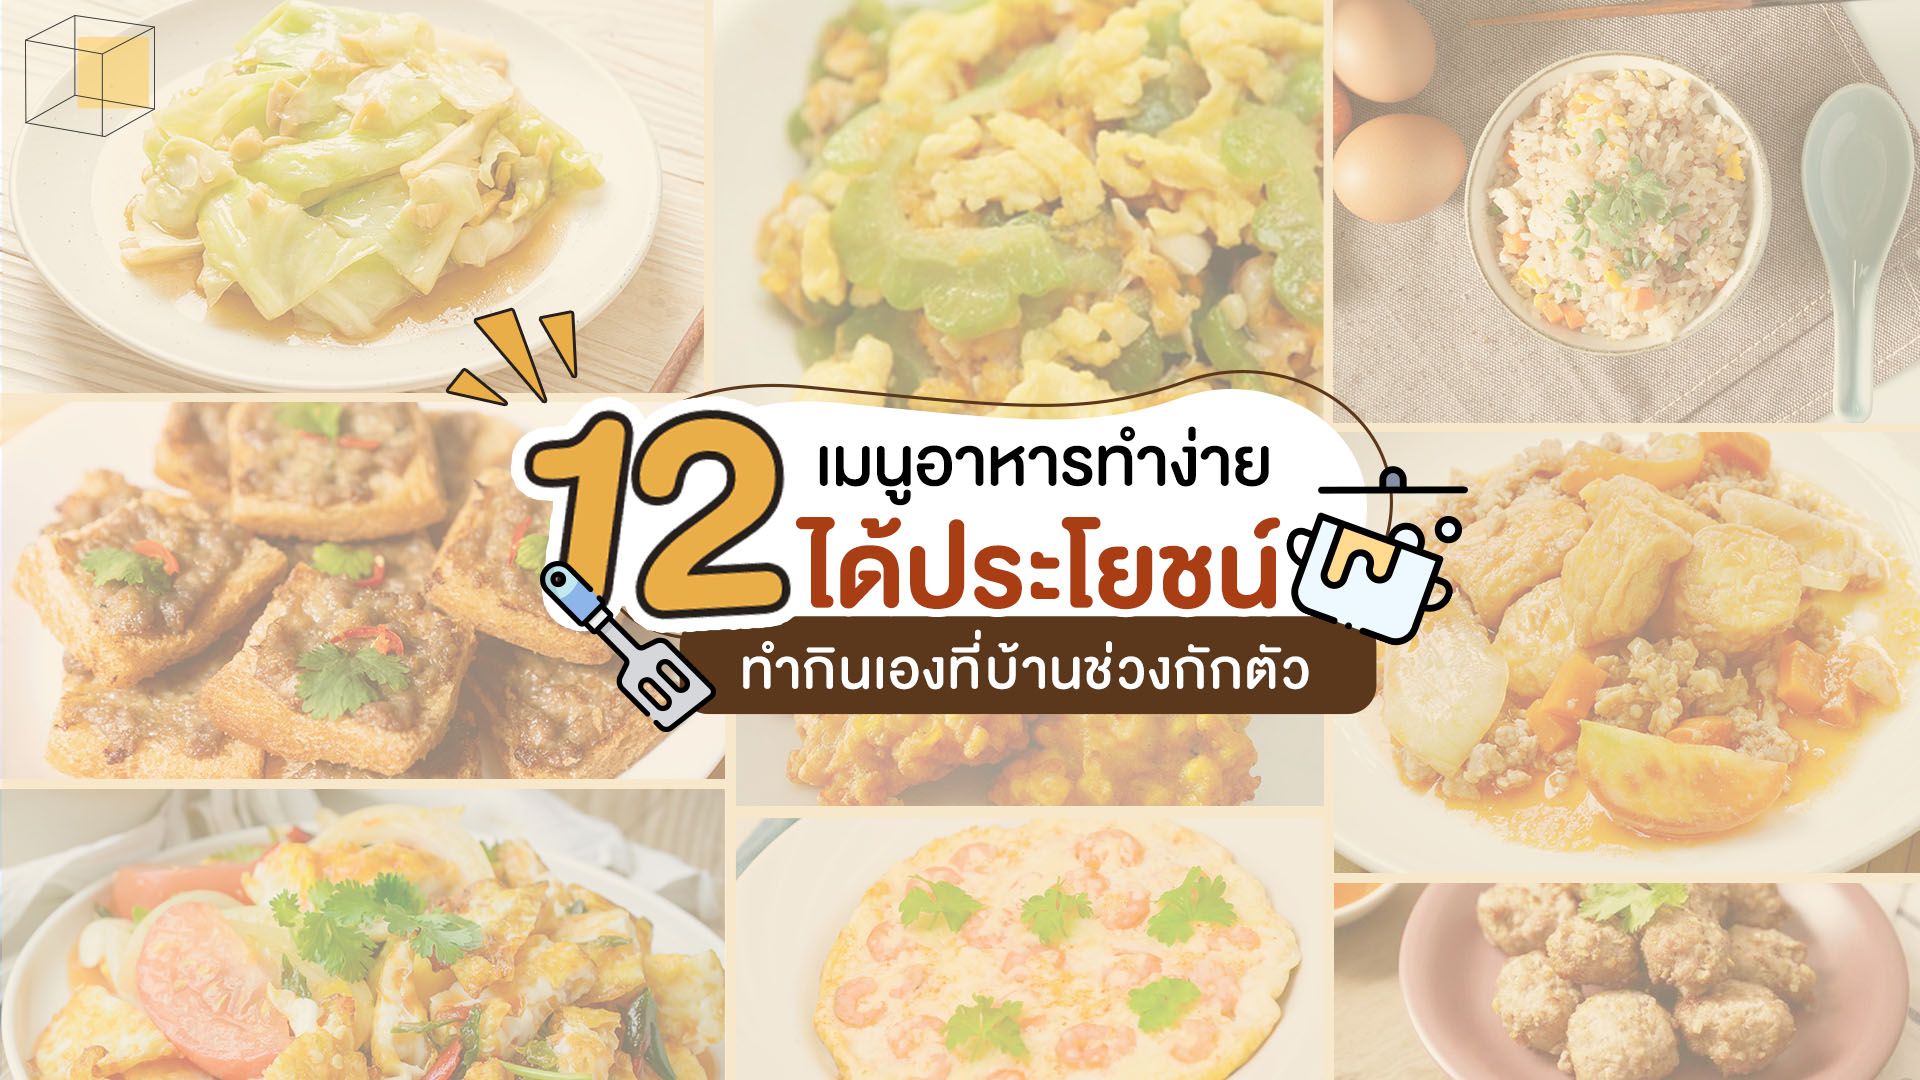 12 เมนูอาหารทำง่าย ได้ประโยชน์ ทำกินเองที่บ้าน | Cottonbaby